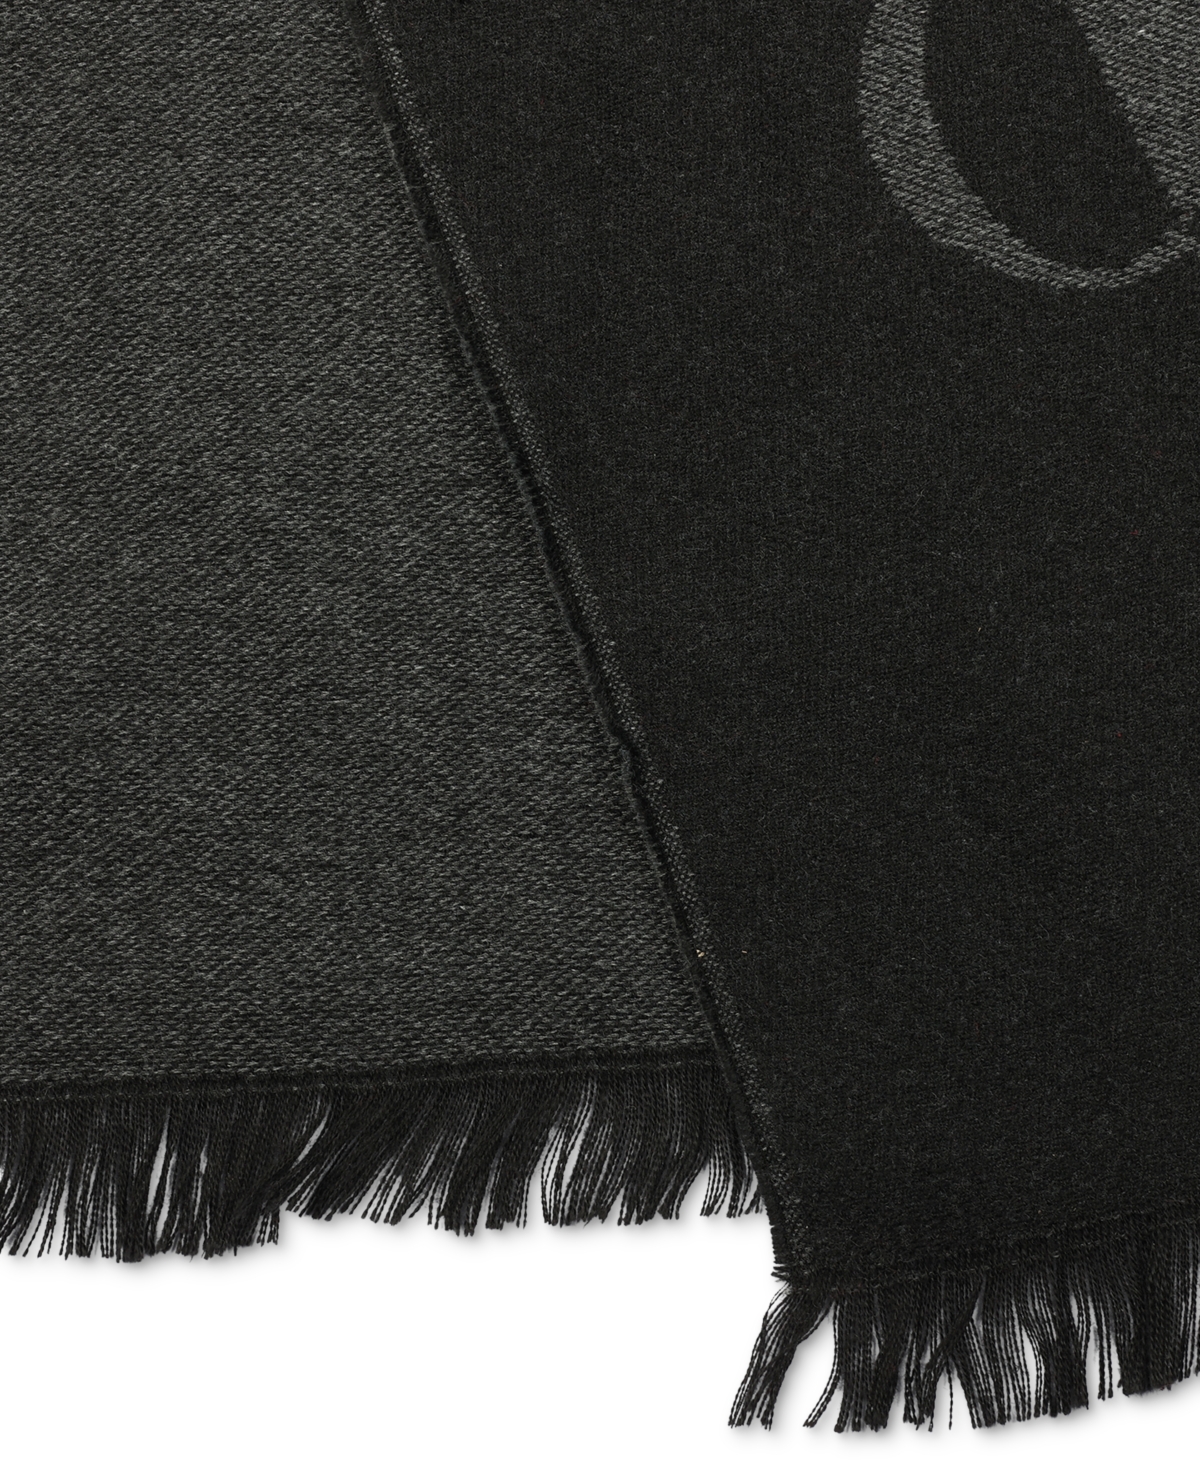 Shop Calvin Klein Men's Inverse Ck Logo Yarn Dye Scarf In Black Medium Grey